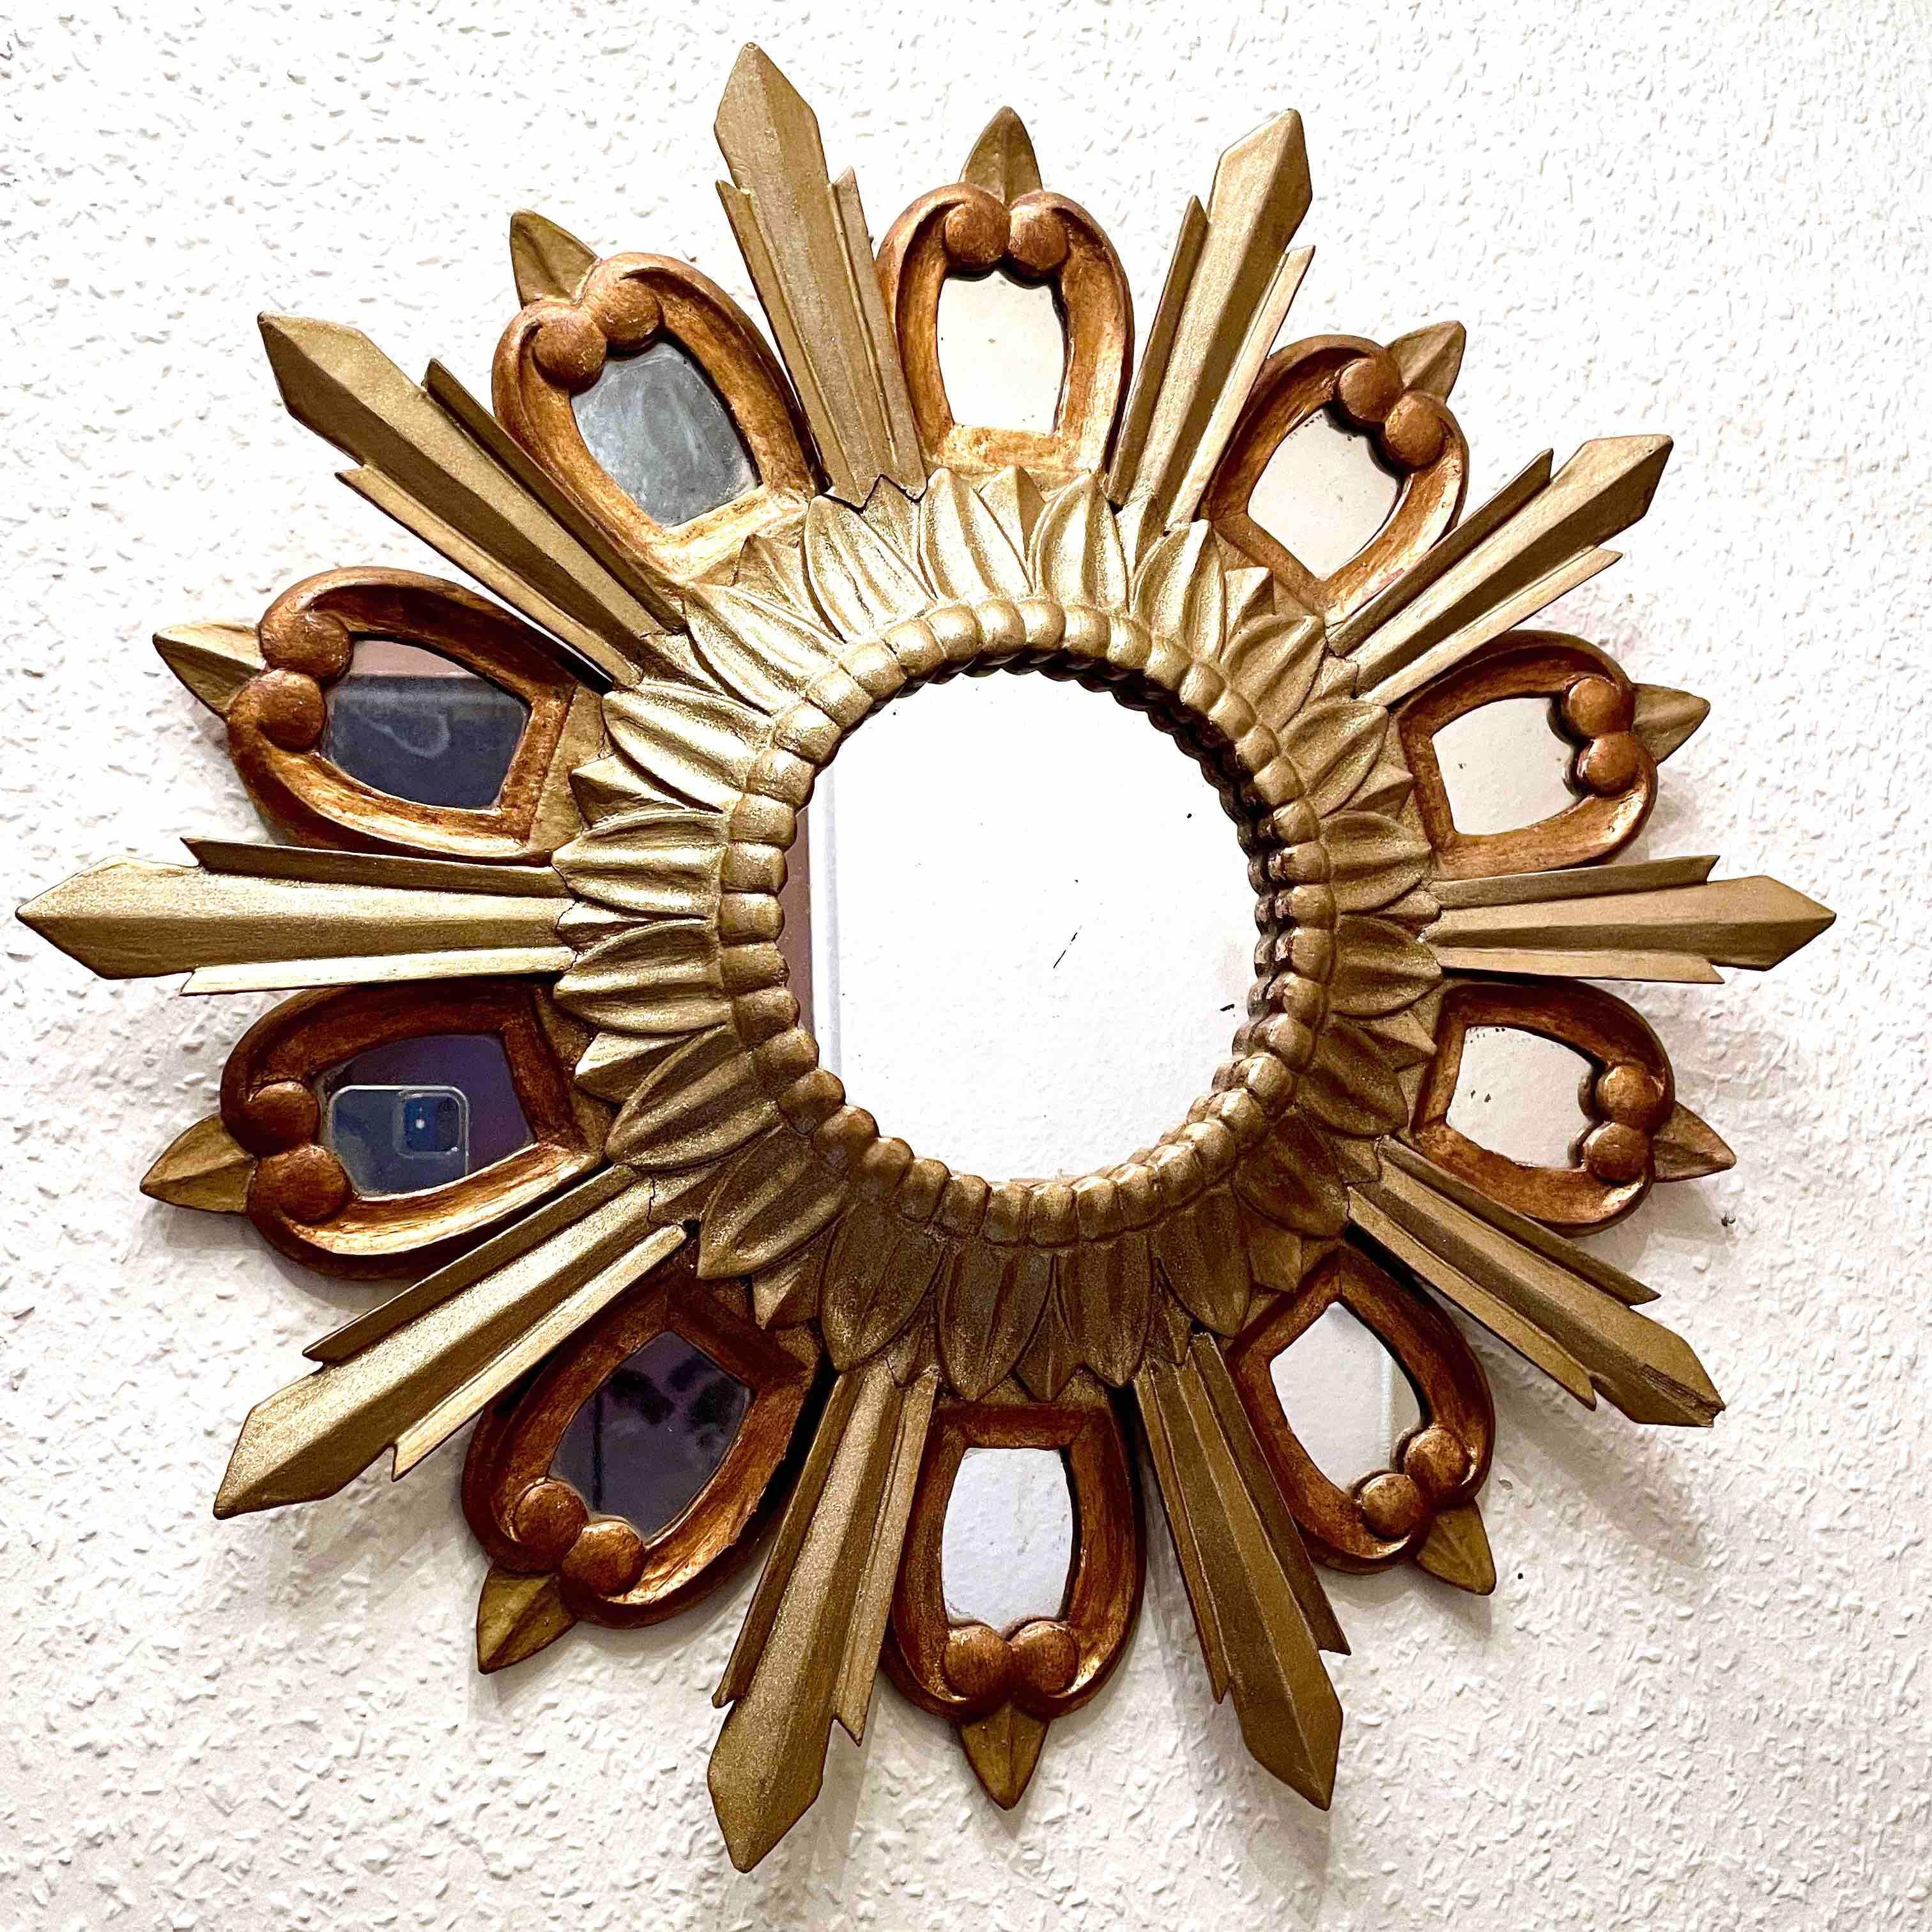 Un magnifique miroir en étoile. Fabriqué en bois doré. Aucun éclat, aucune fissure, aucune réparation. Il mesure approximativement : 21